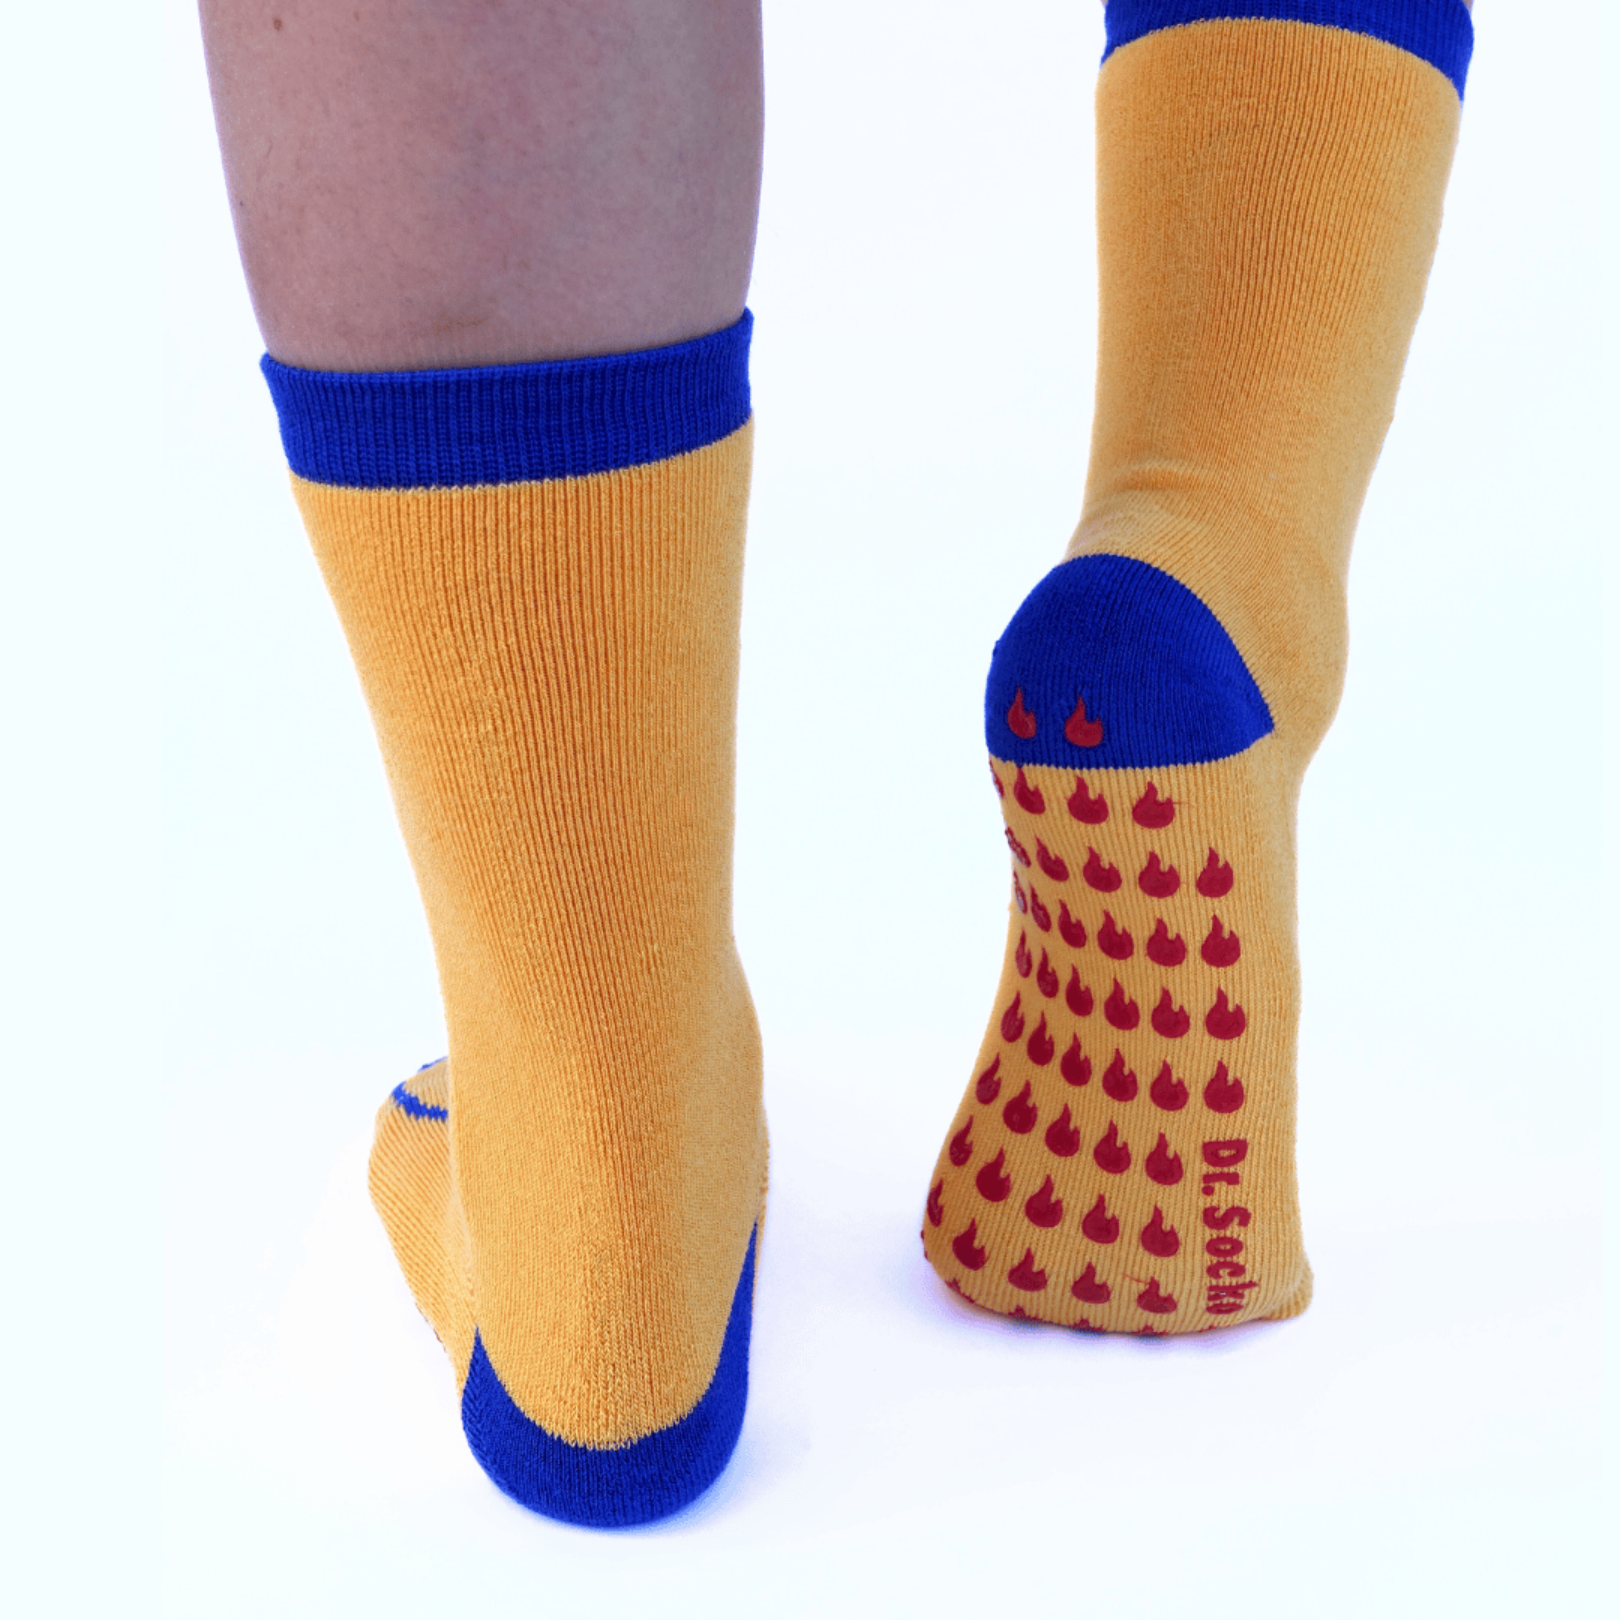 Hospital Socks Women Men Non Skid Gripper Cozy Socks DEBRA